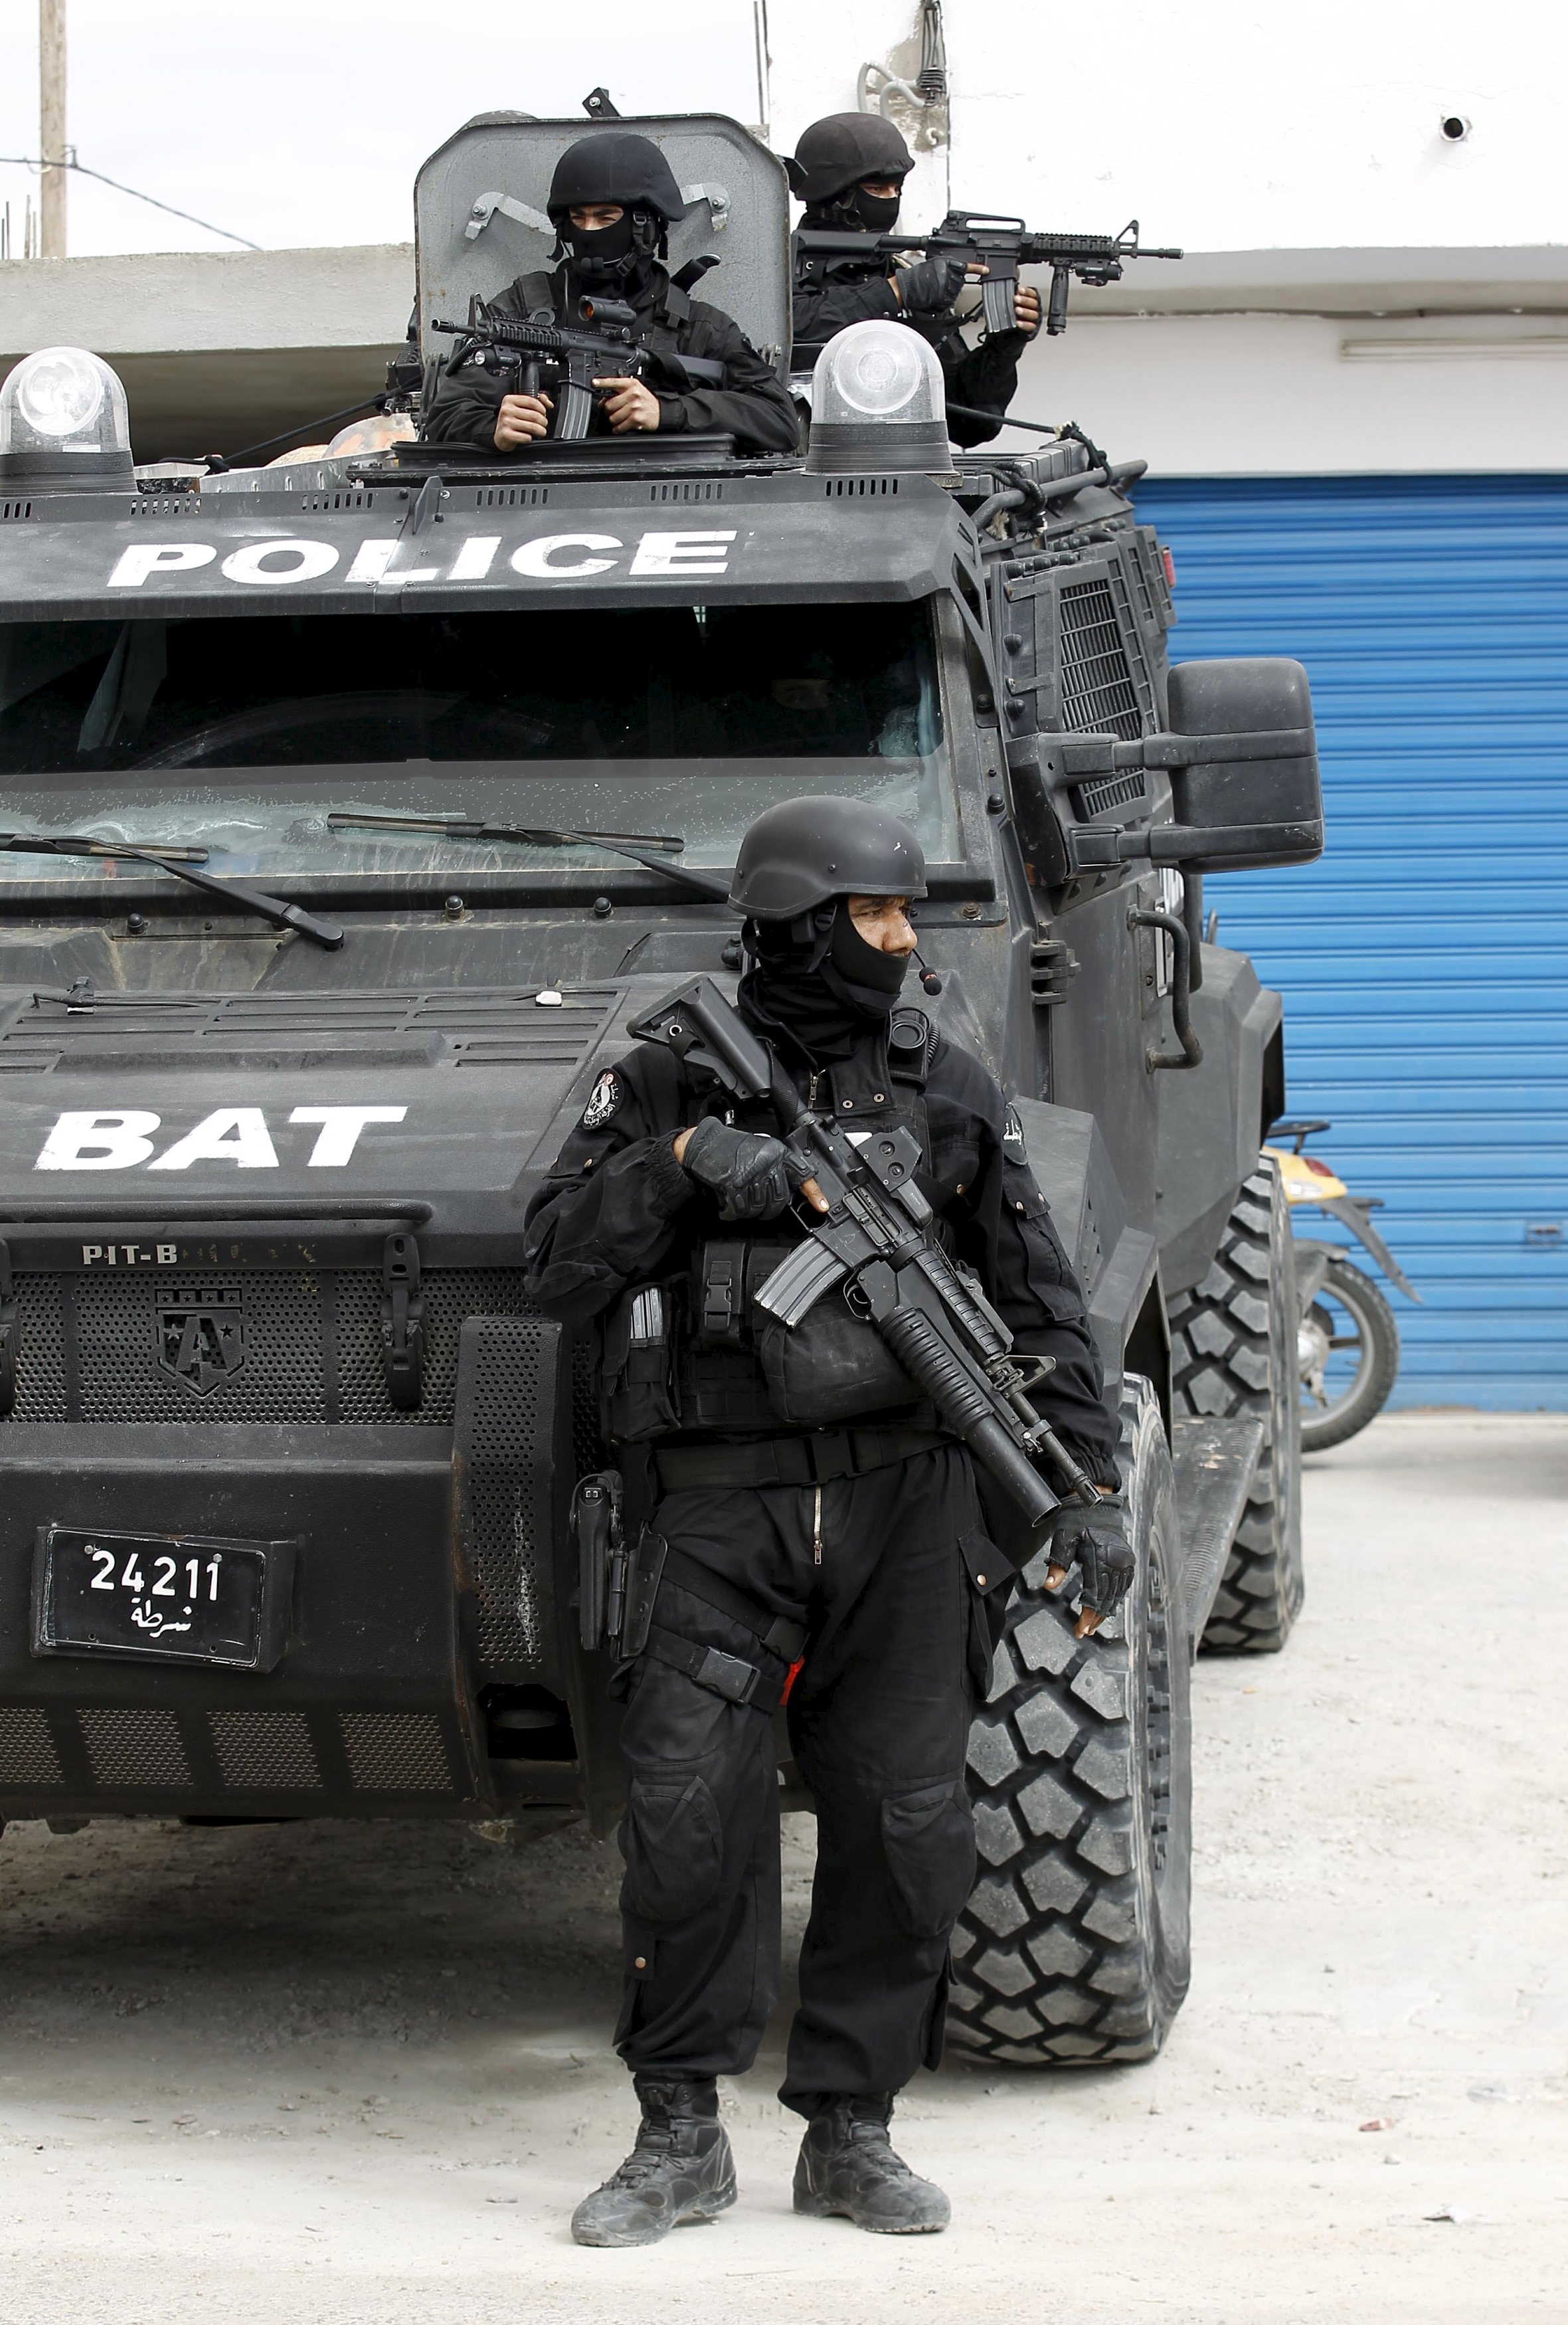 هجوم بن قردان..
خطر داعش قد يمتد إلى تونس